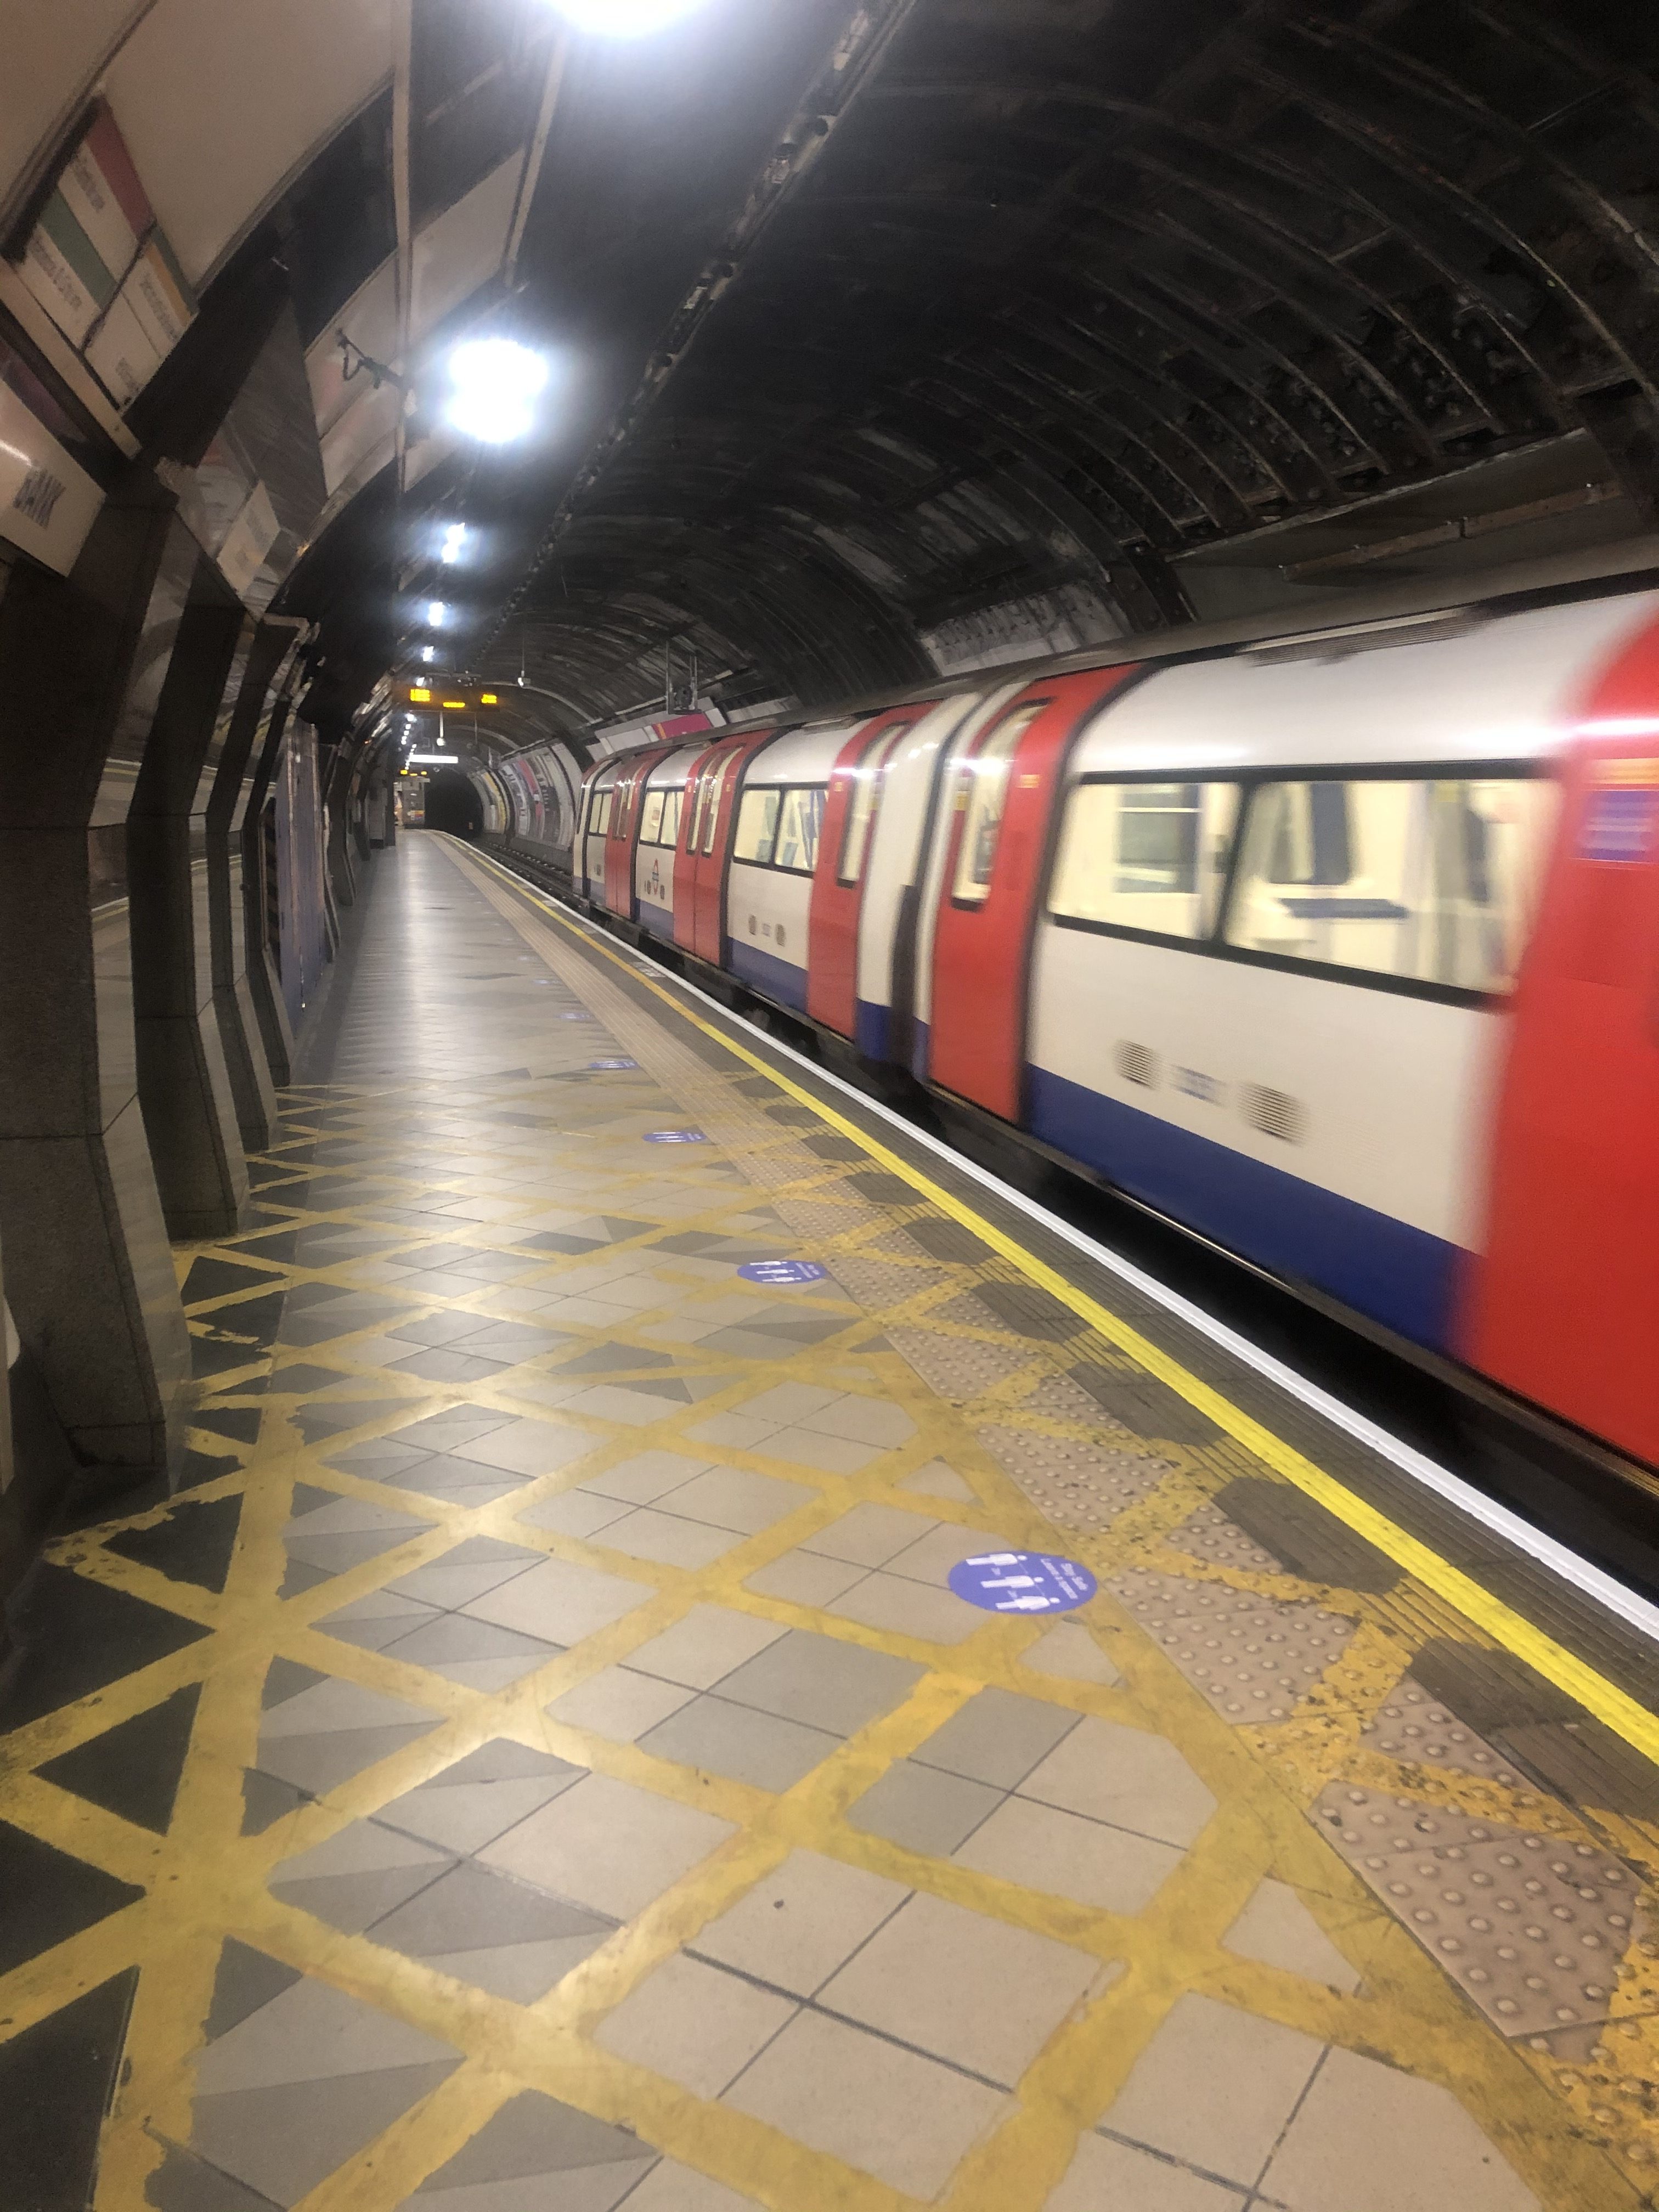 Deserted London Tube